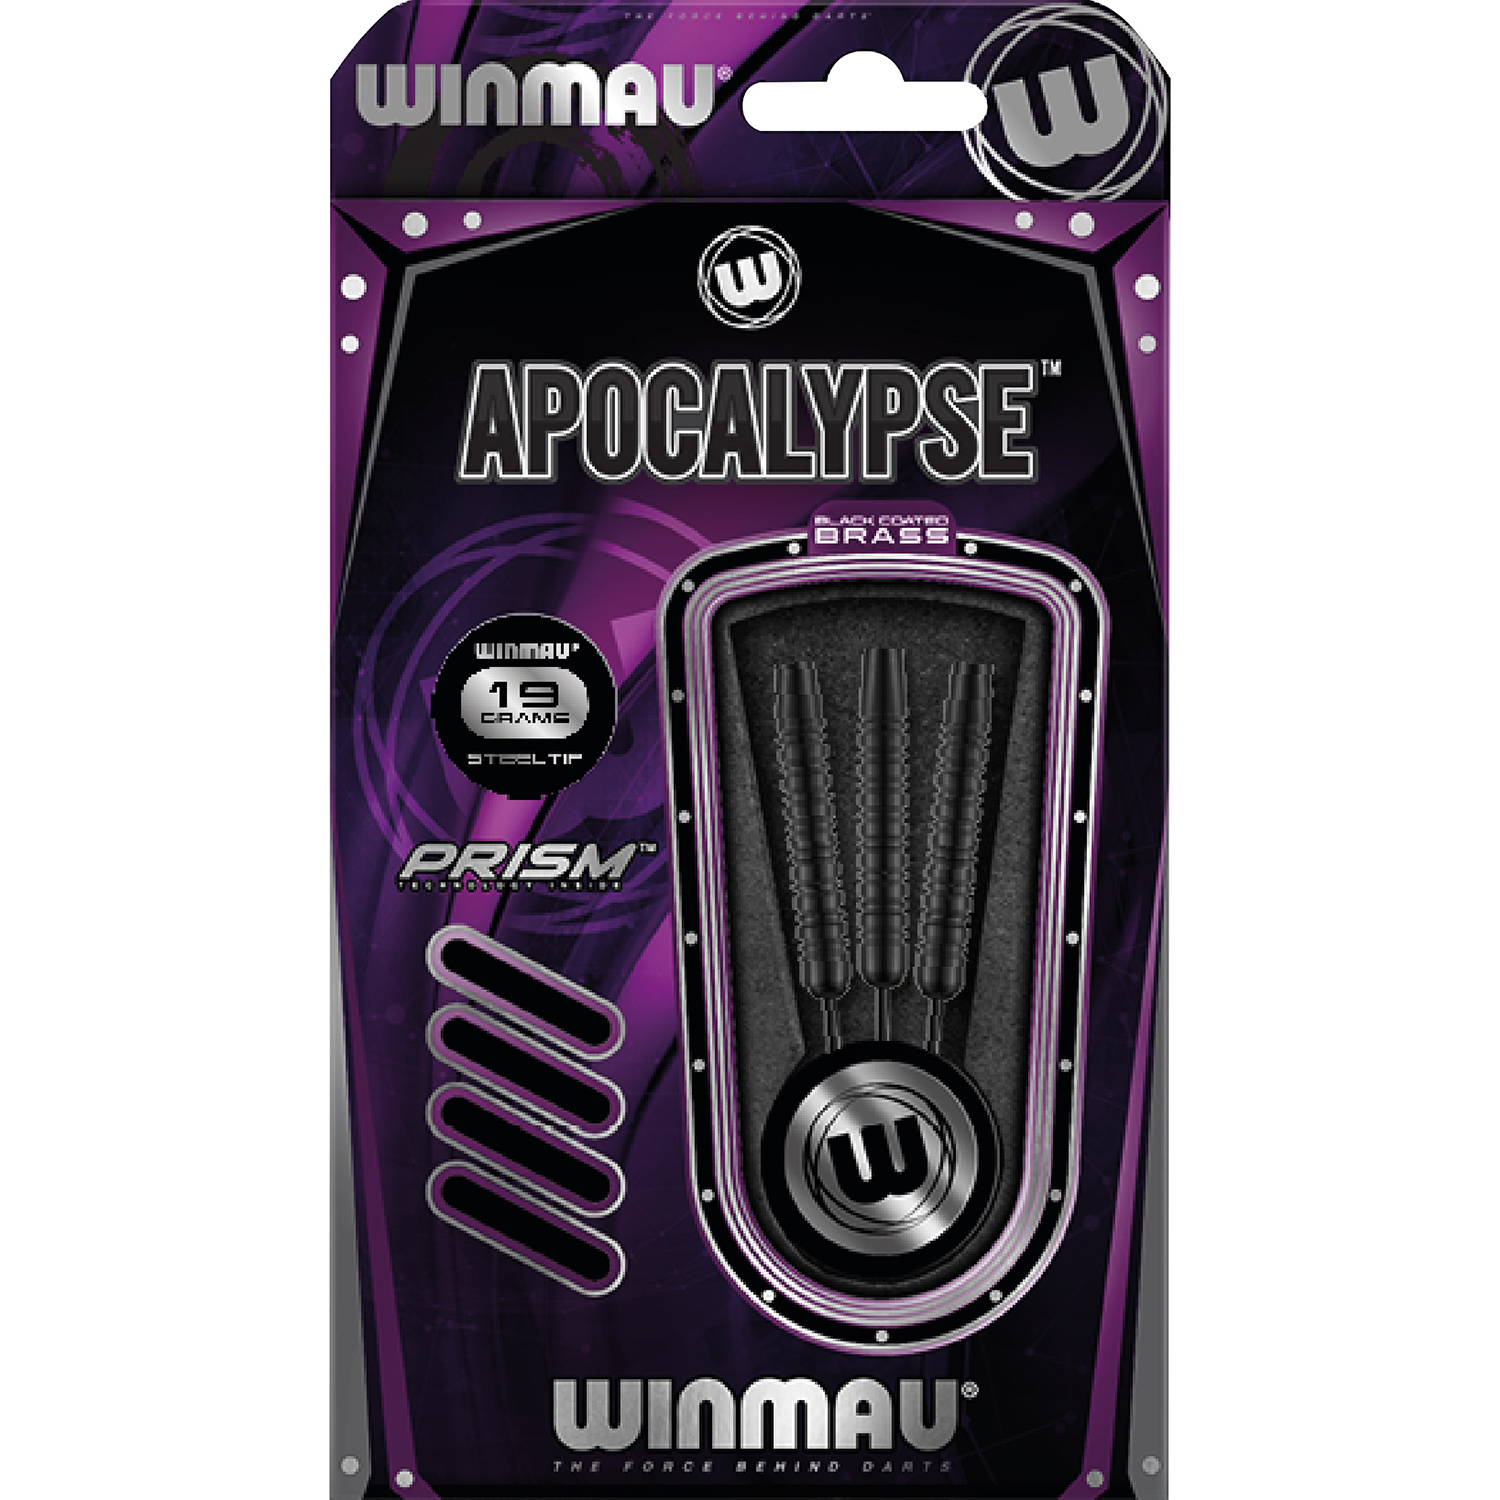 WINMAU Apocalypse 1 Brass - 19 gram